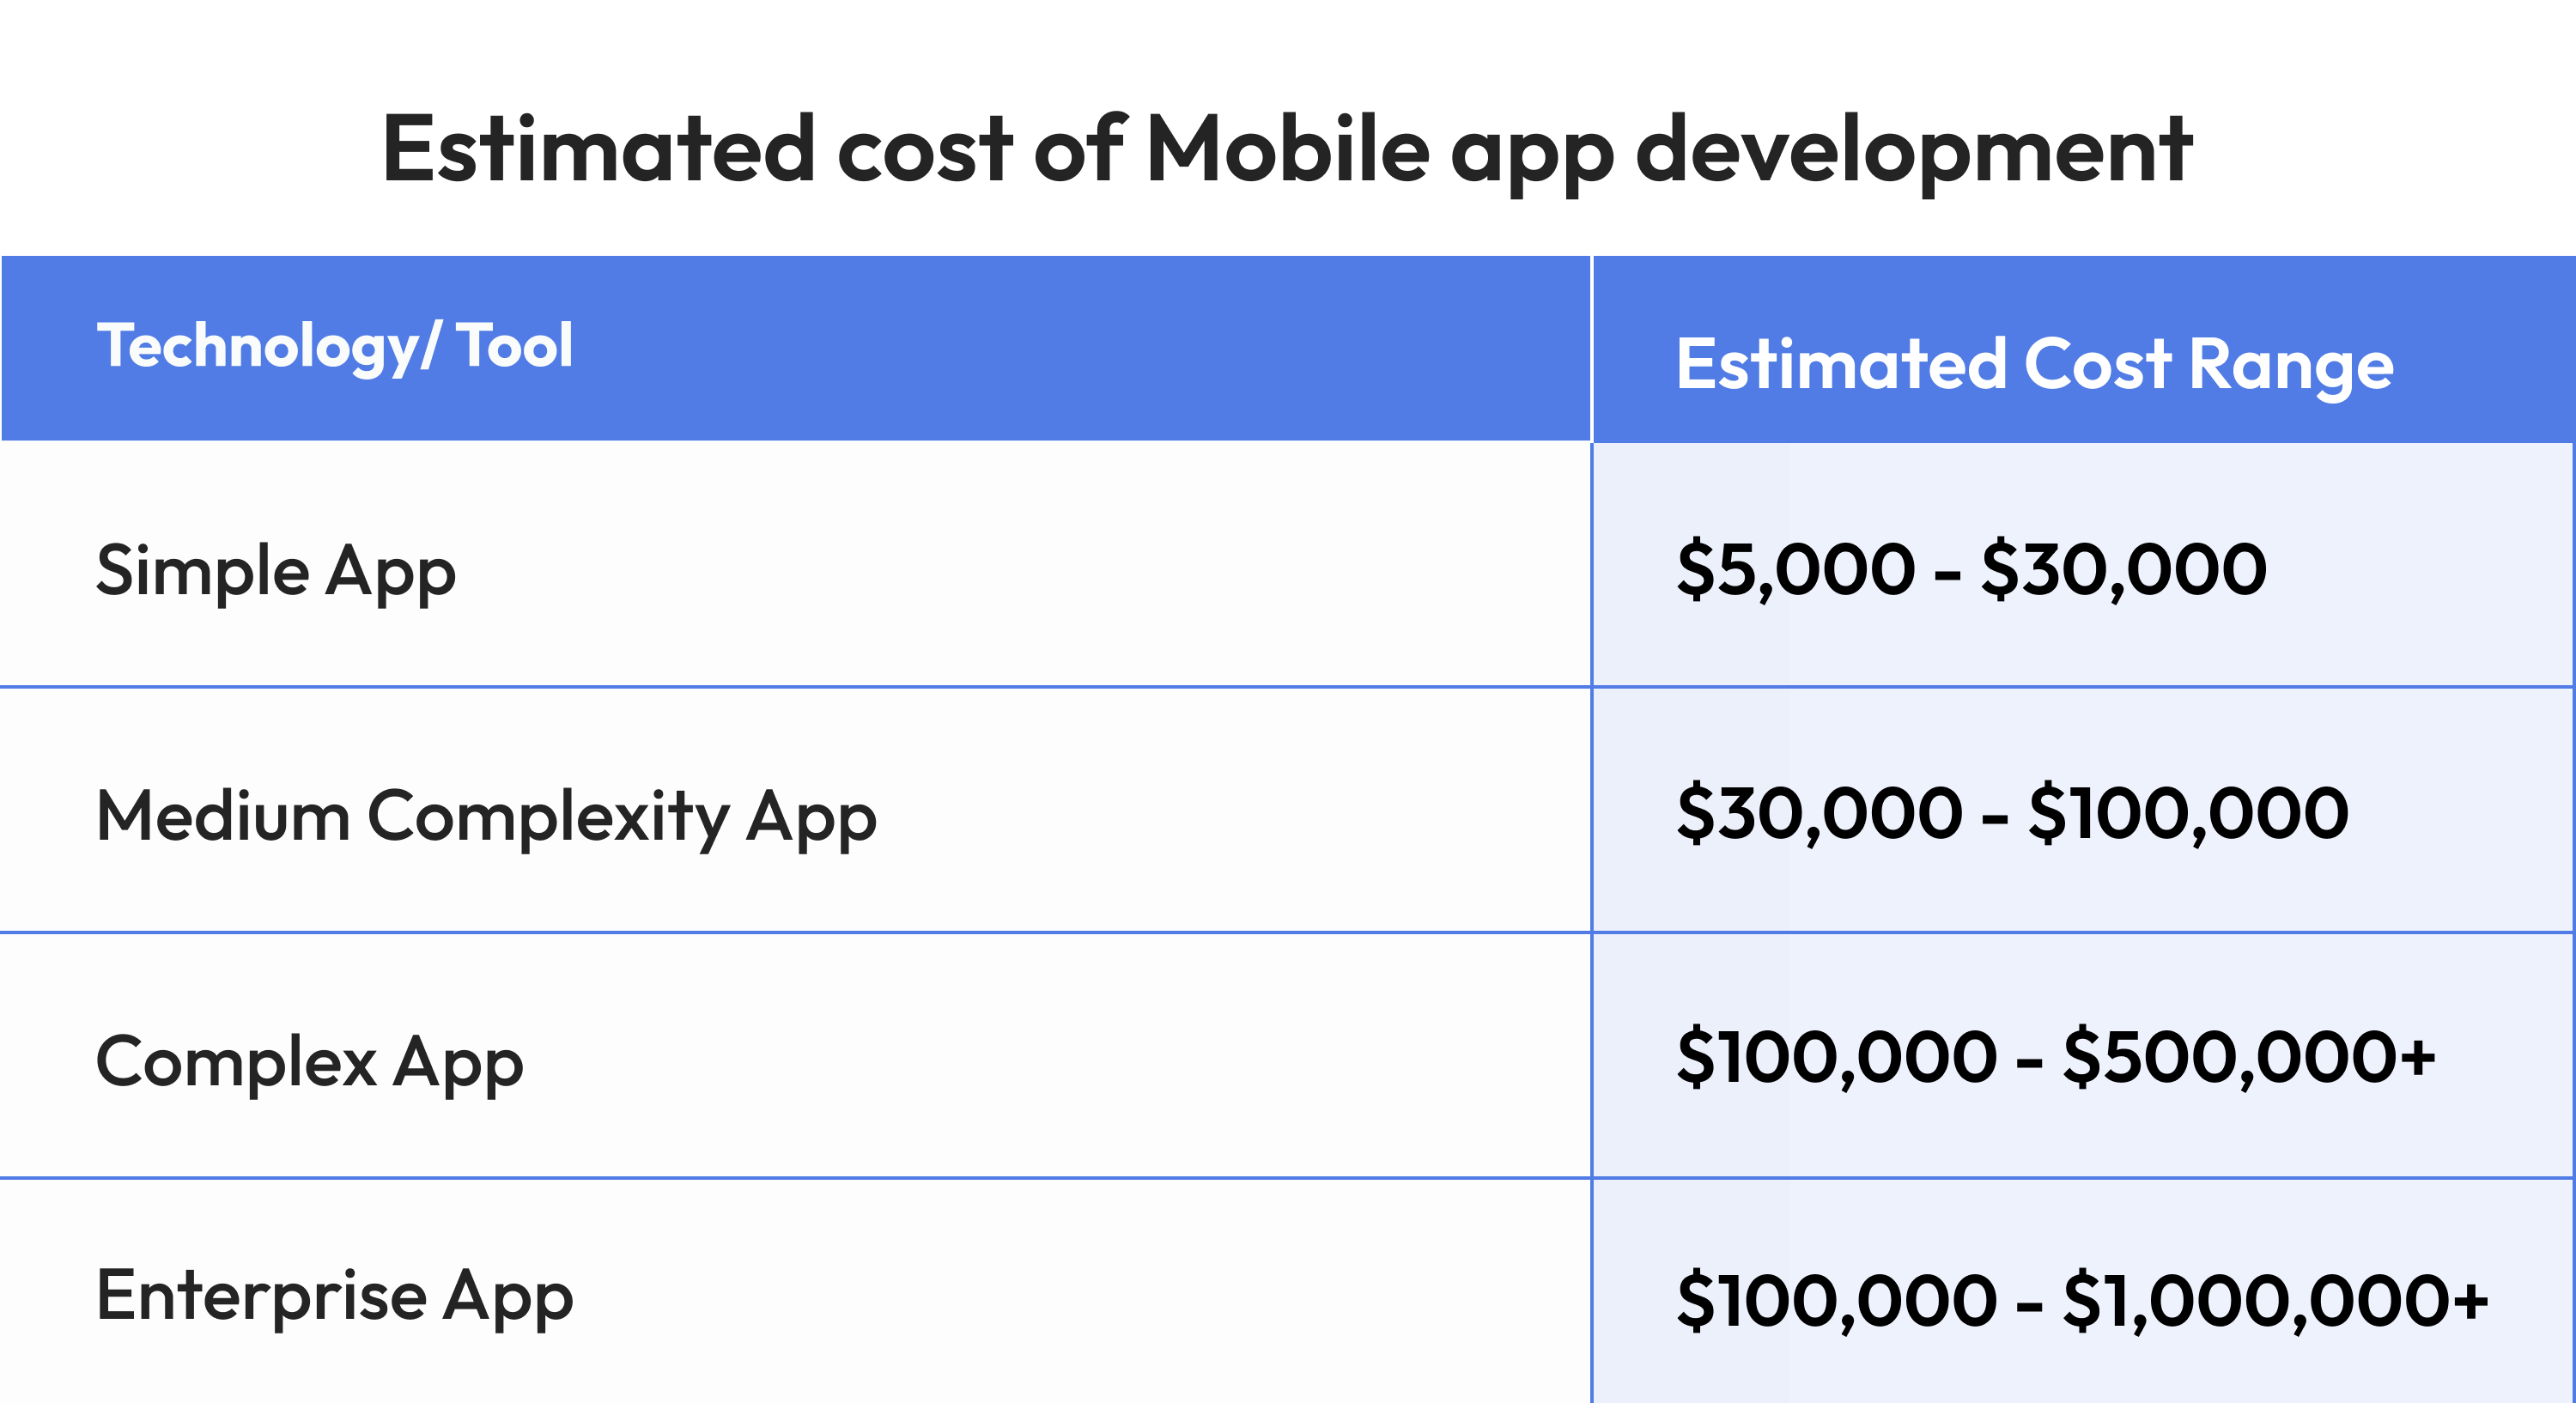 Mobile app development estimate cost